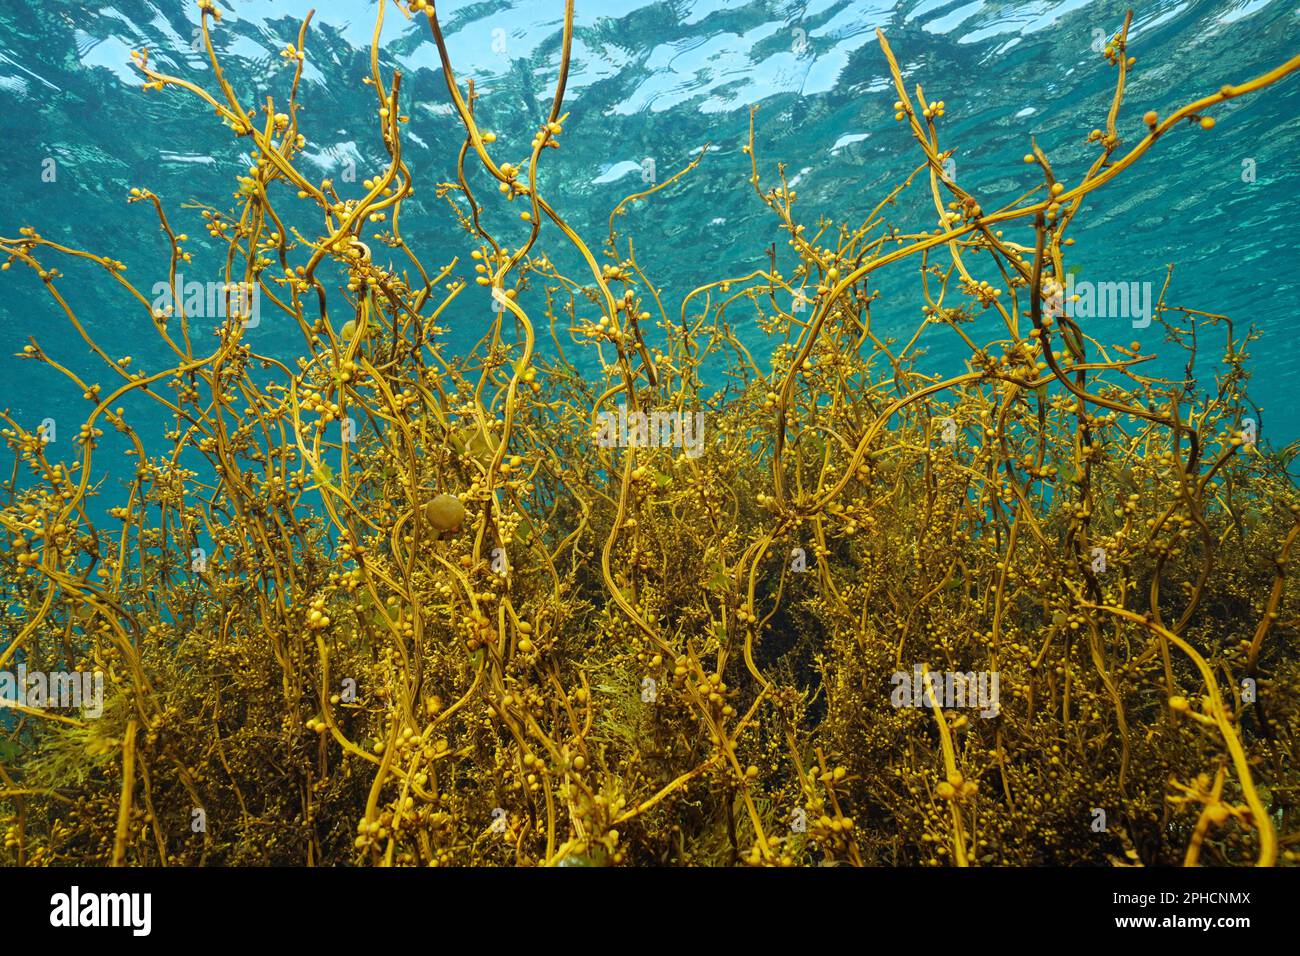 Japanese wireweed seaweed underwater in the ocean, Sargassum muticum alga, eastern Atlantic, Spain Stock Photo